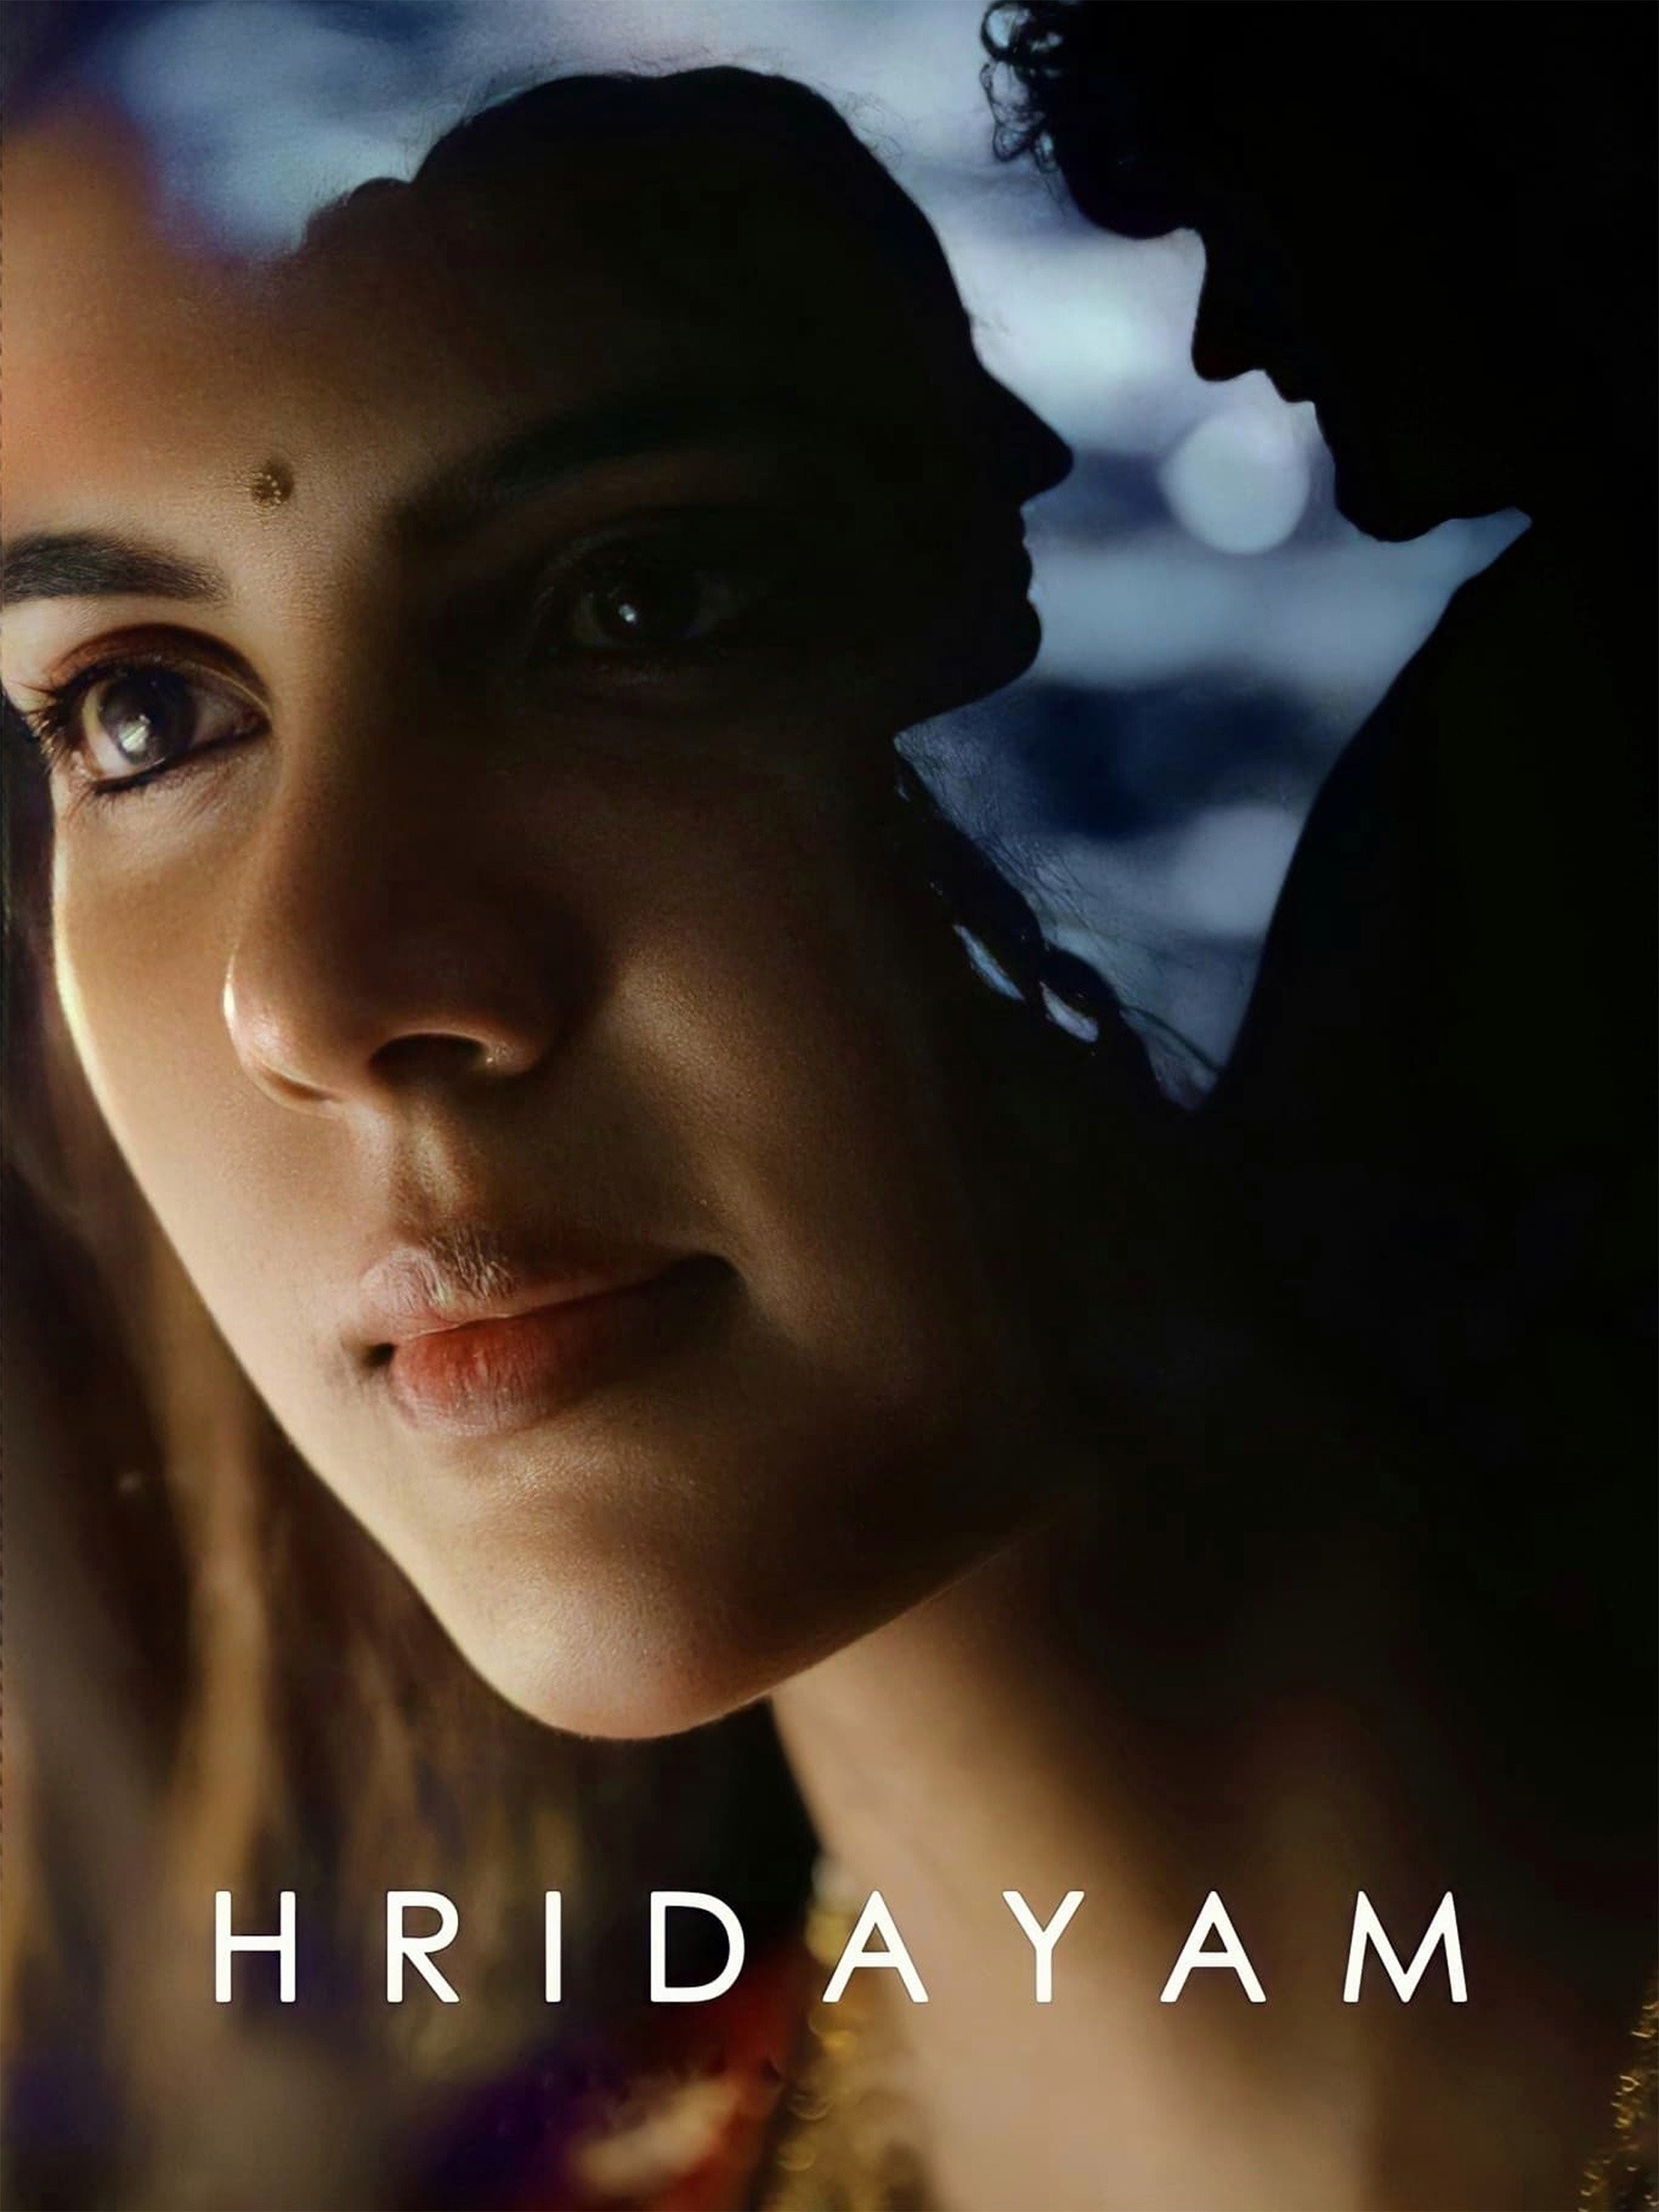 Hridayam Movie Review Tamil | Pranav Mohanlal | Kalyani Priyadharshan |  Dharsana | VineethSrinivasan - YouTube